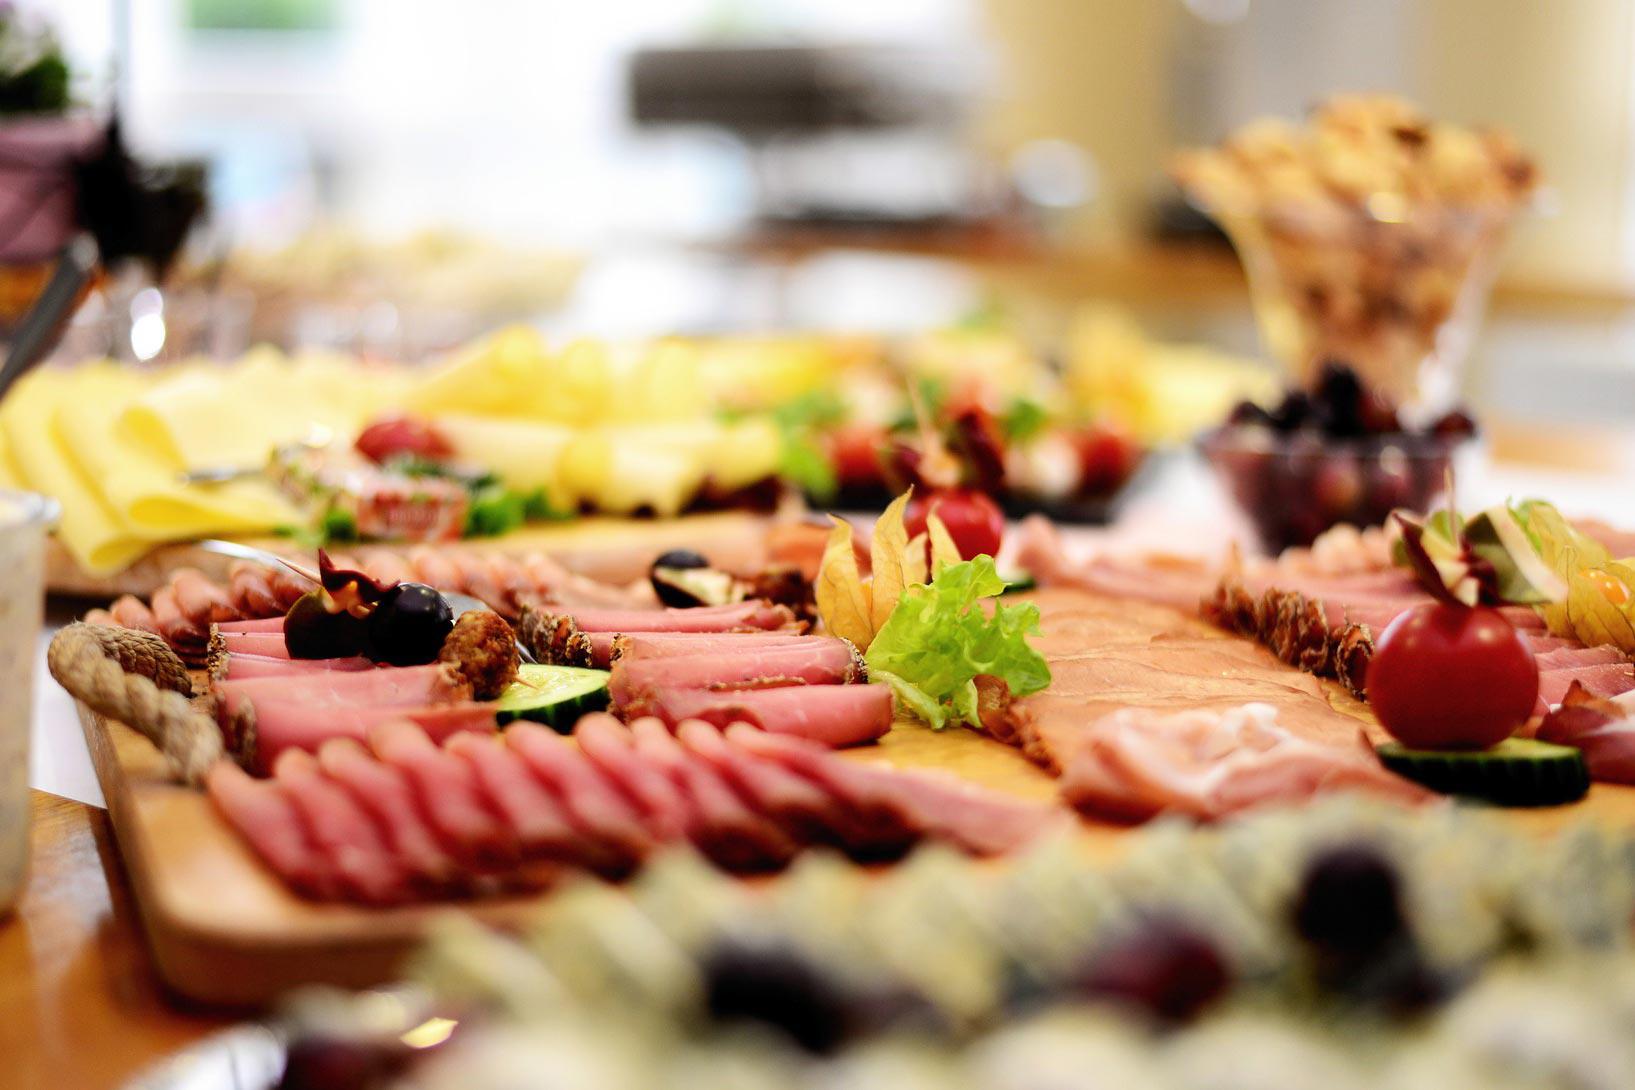 Wir bieten Ihnen gerne Catering für bis zu 30 Personen. Wählen Sie zum Beispiel Kassler und Sauerkraut, Spießbraten und diverse Salate, Käse-, Wurst- und Räucherfischplatten.